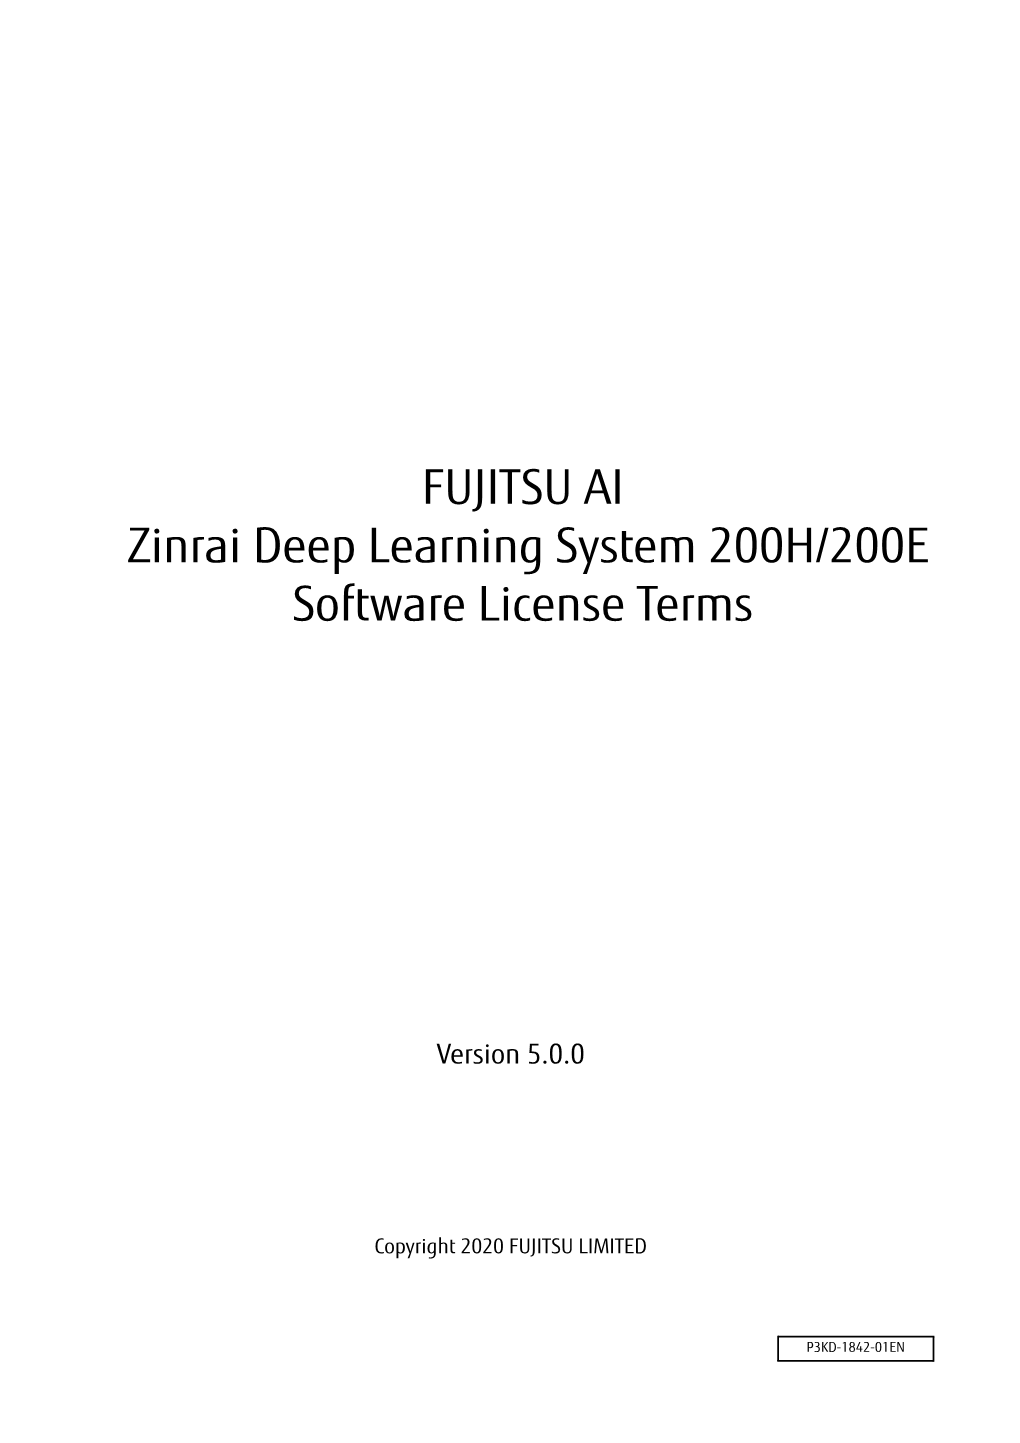 FUJITSU AI Zinrai Deep Learning System 200H/200E Software License Terms